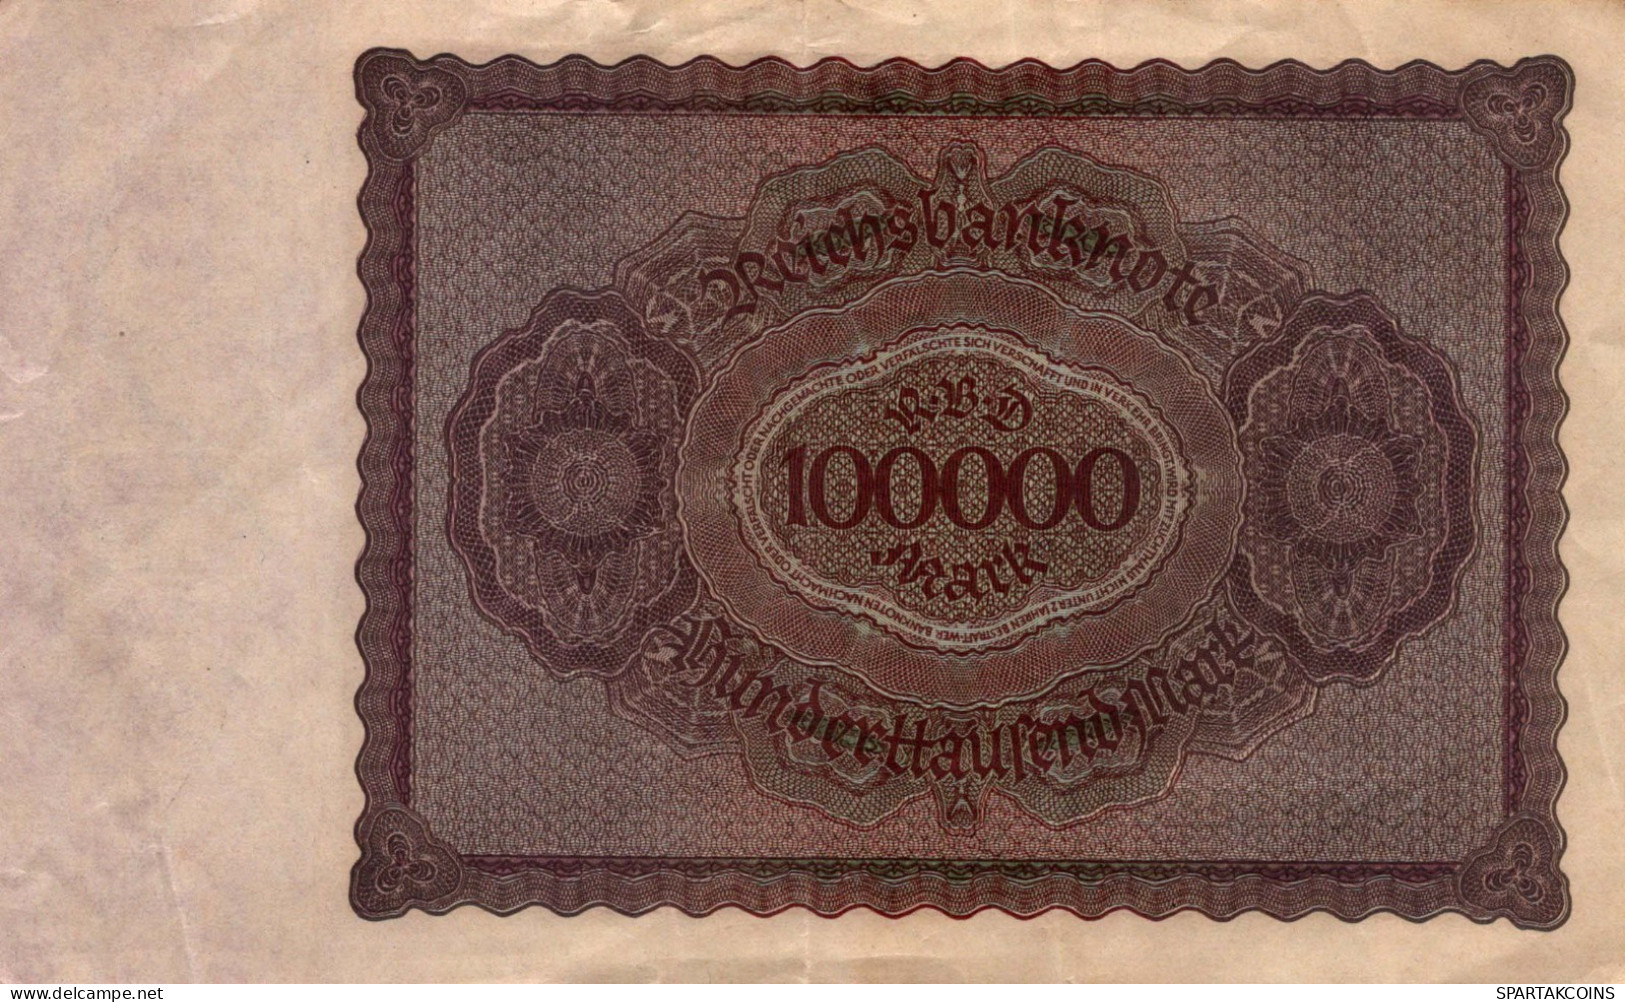 100000 MARK 1923 Stadt BERLIN DEUTSCHLAND Papiergeld Banknote #PL138 - [11] Local Banknote Issues